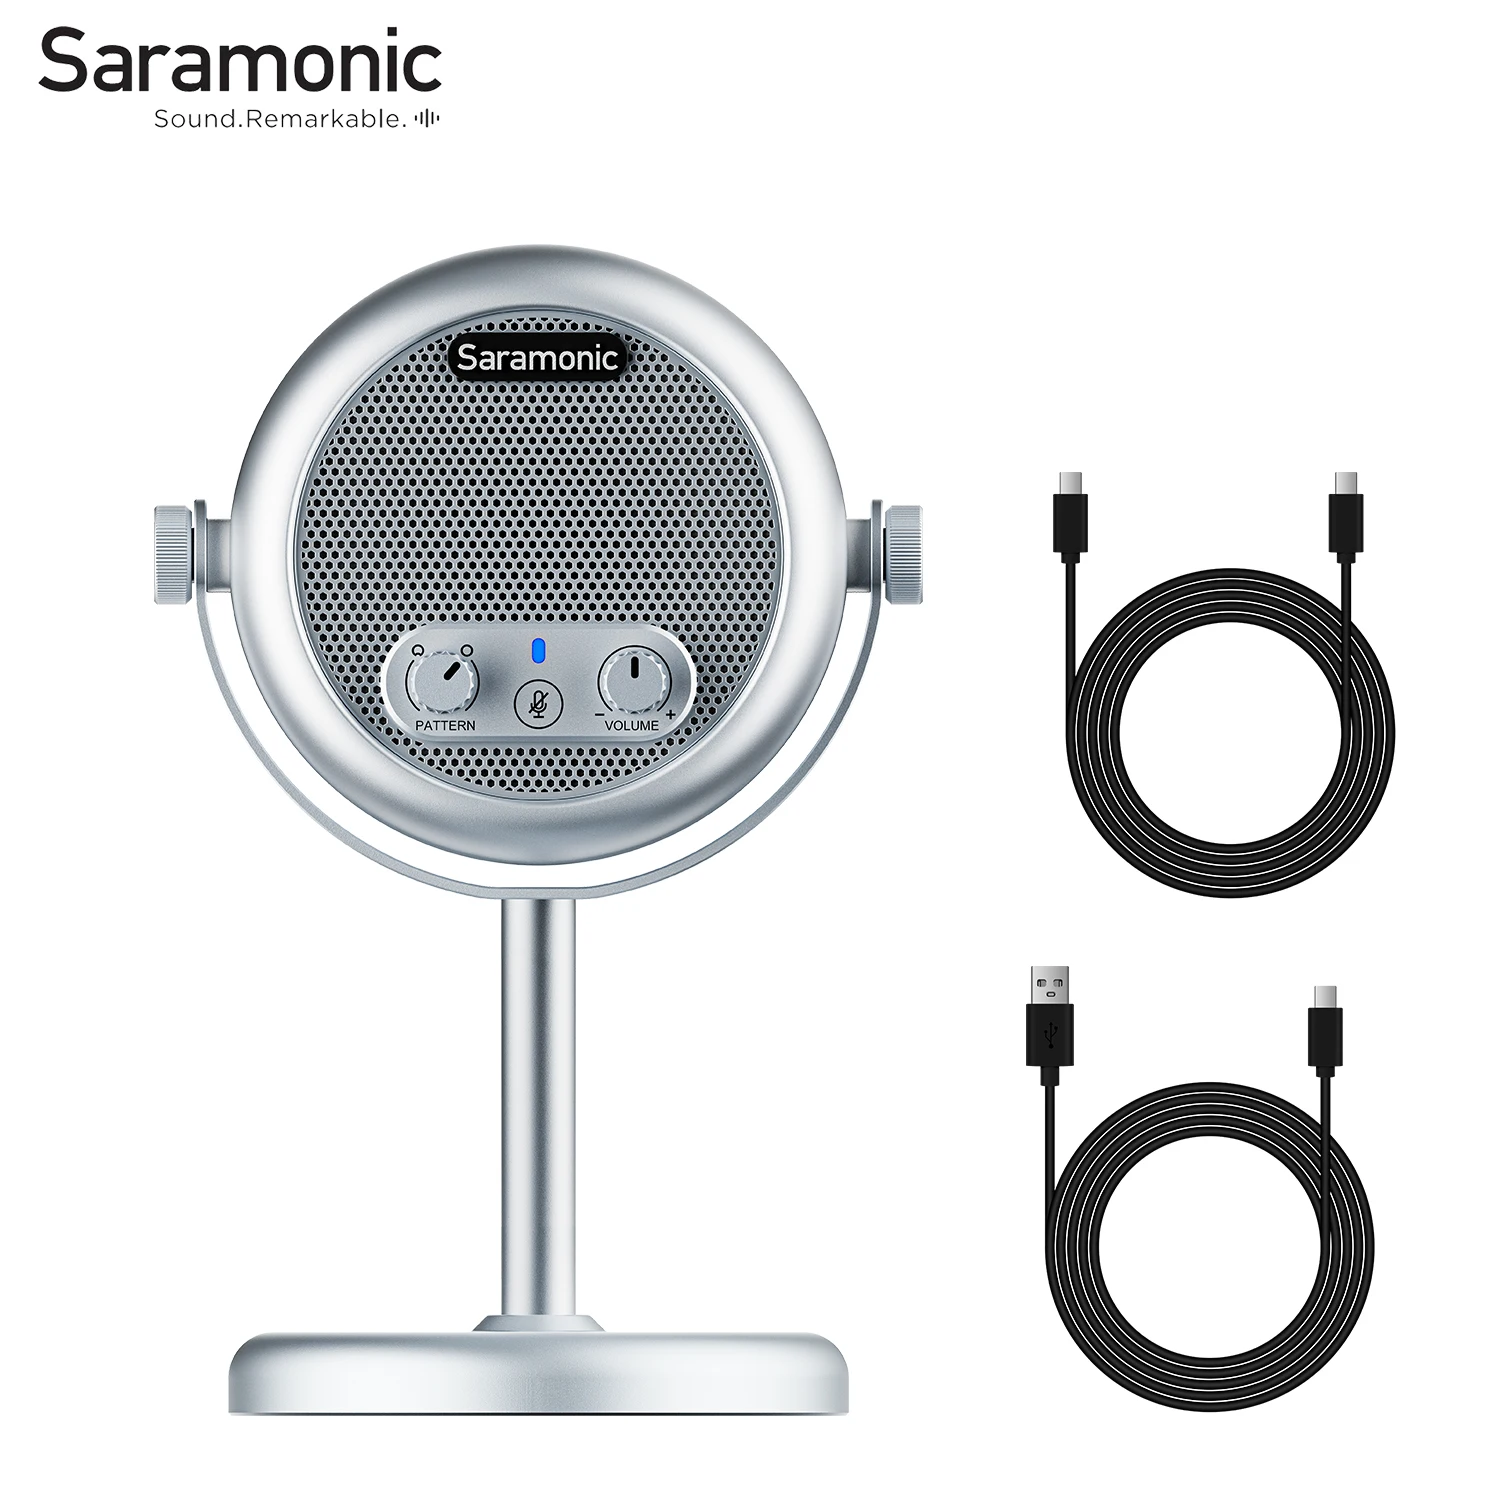 

Настольный конденсаторный USB-микрофон Saramonic Xmic Z4 для Android, планшетов, Mac, Windows, компьютеров, прямых трансляций, конференций, Youtube